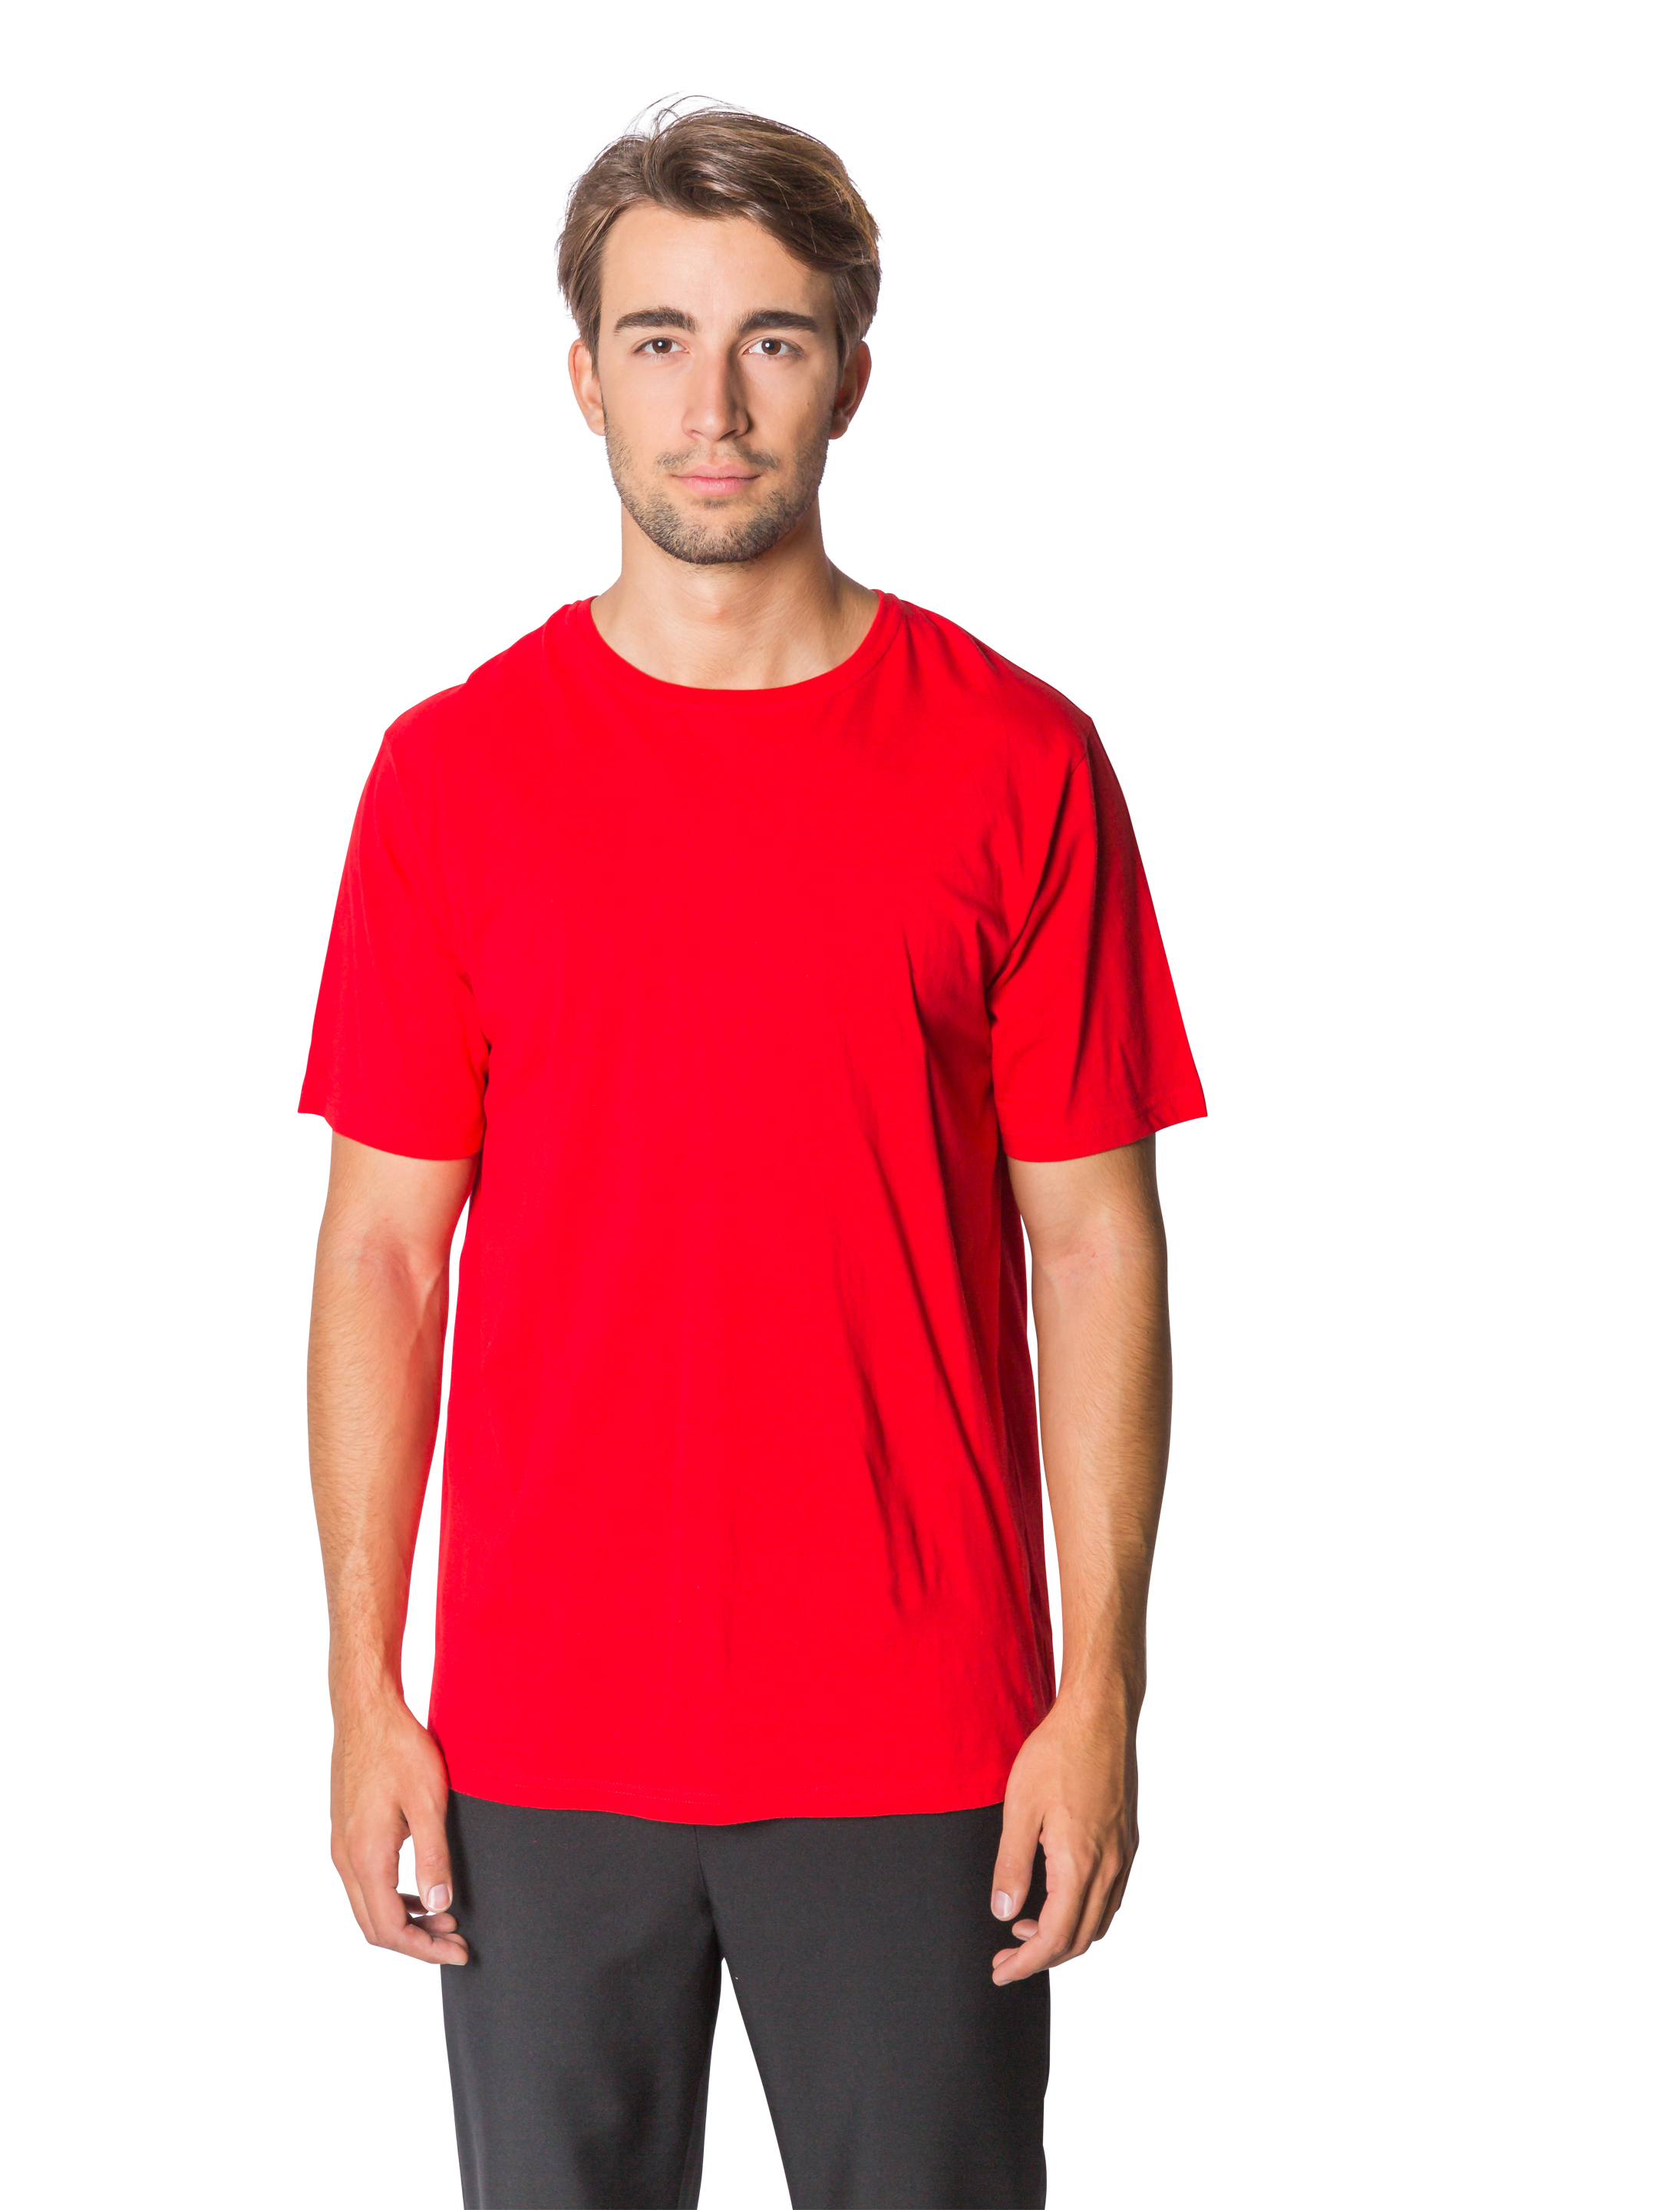 T-Shirt Herren rot M